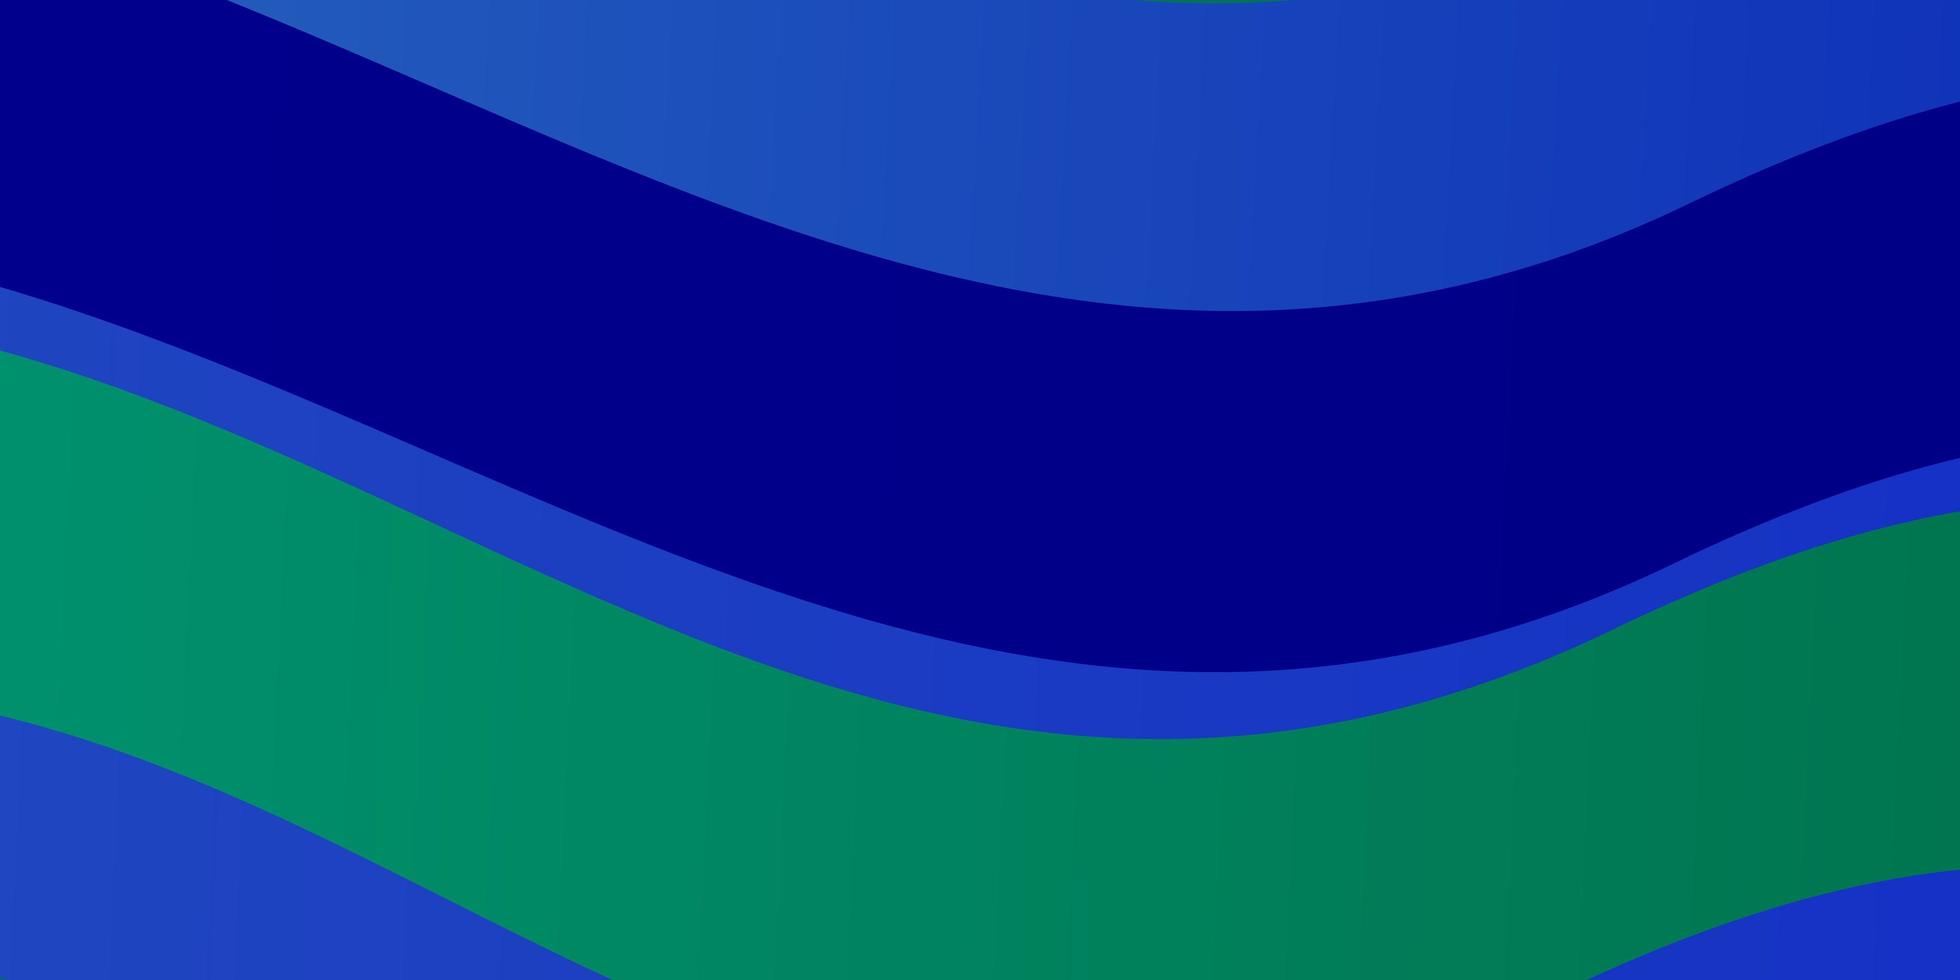 modelo de vetor azul claro e verde com linhas irônicas.